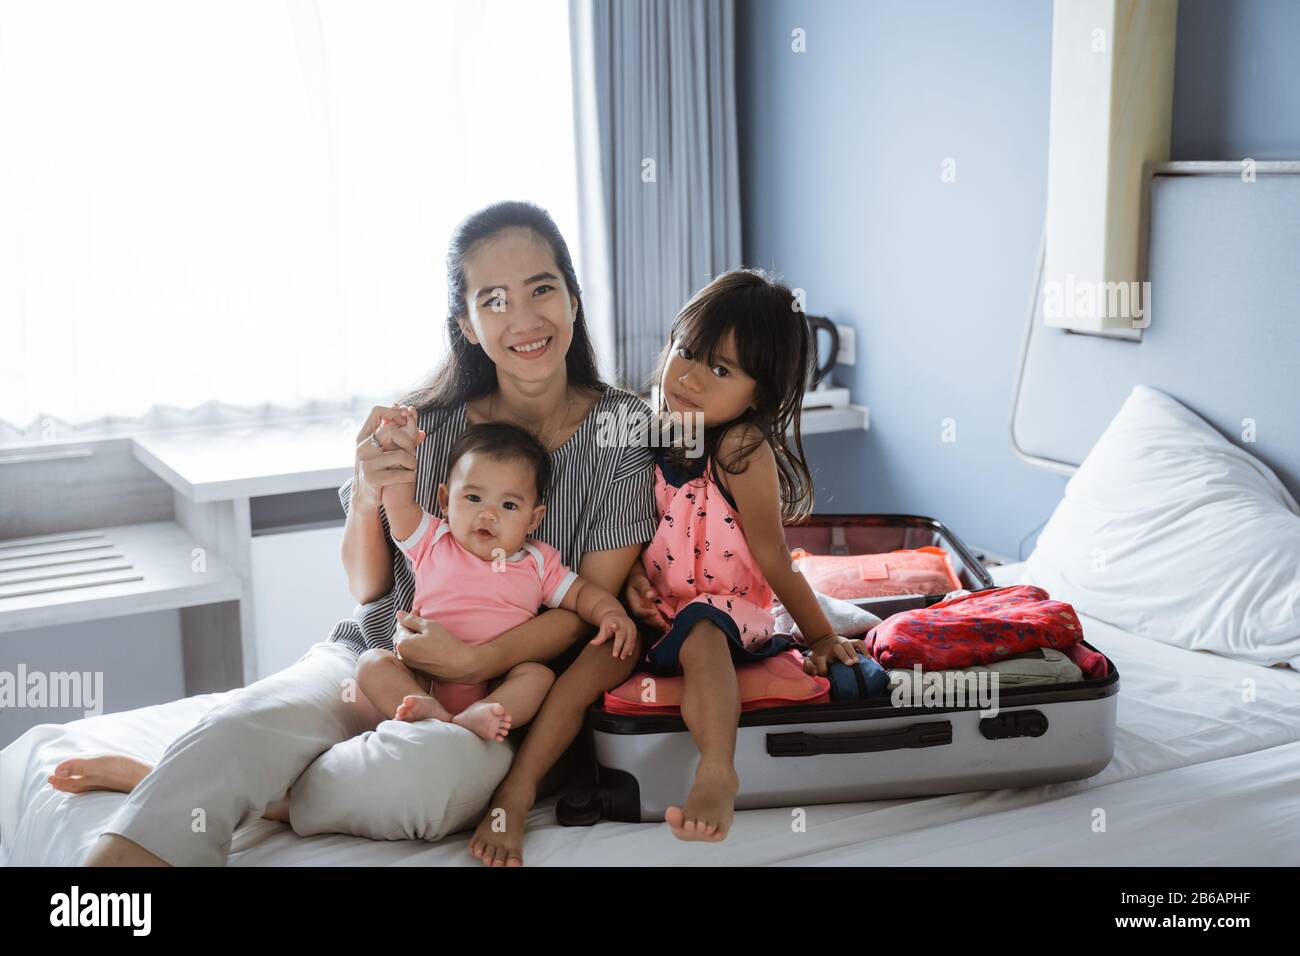 Mutter und ihre beiden Kinder lächeln, nachdem sie einen Koffer für den Urlaub vorbereitet haben, auf dem Bett sitzend Stockfoto